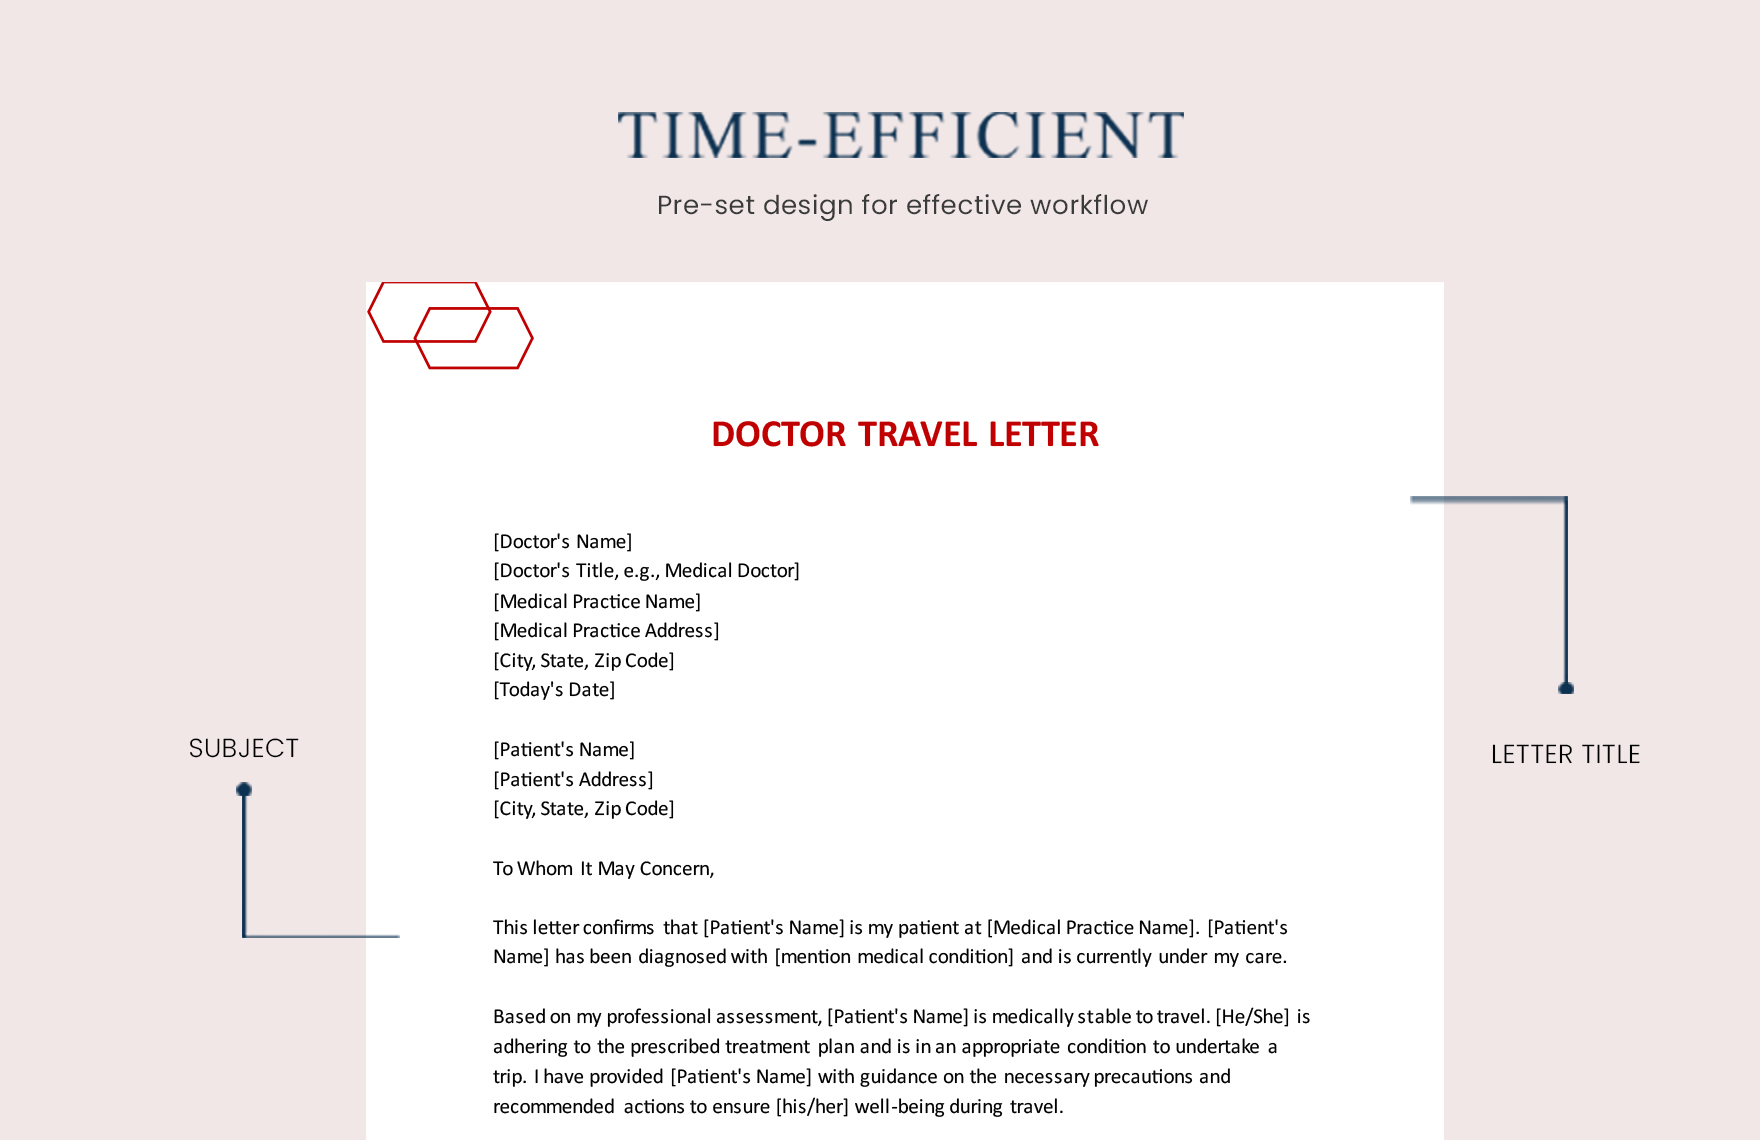 Doctor Travel Letter